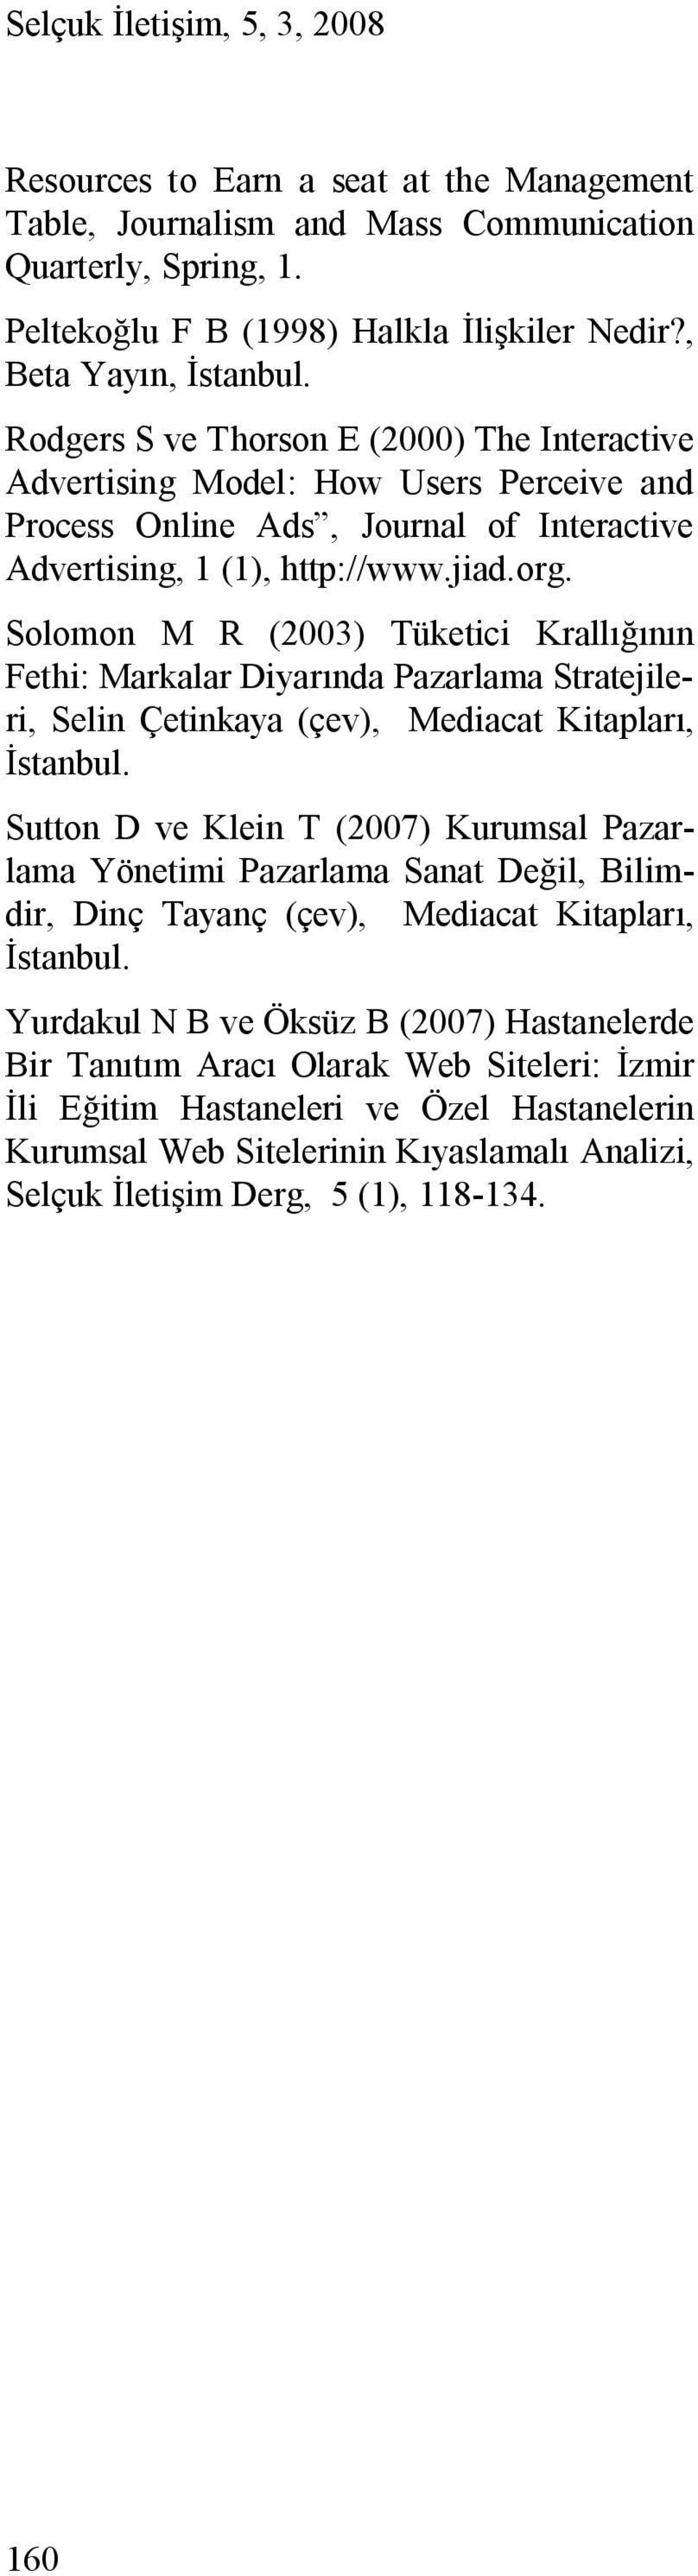 Solomon M R (2003) Tüketici Krallığının Fethi: Markalar Diyarında Pazarlama Stratejileri, Selin Çetinkaya (çev), Mediacat Kitapları, İstanbul.